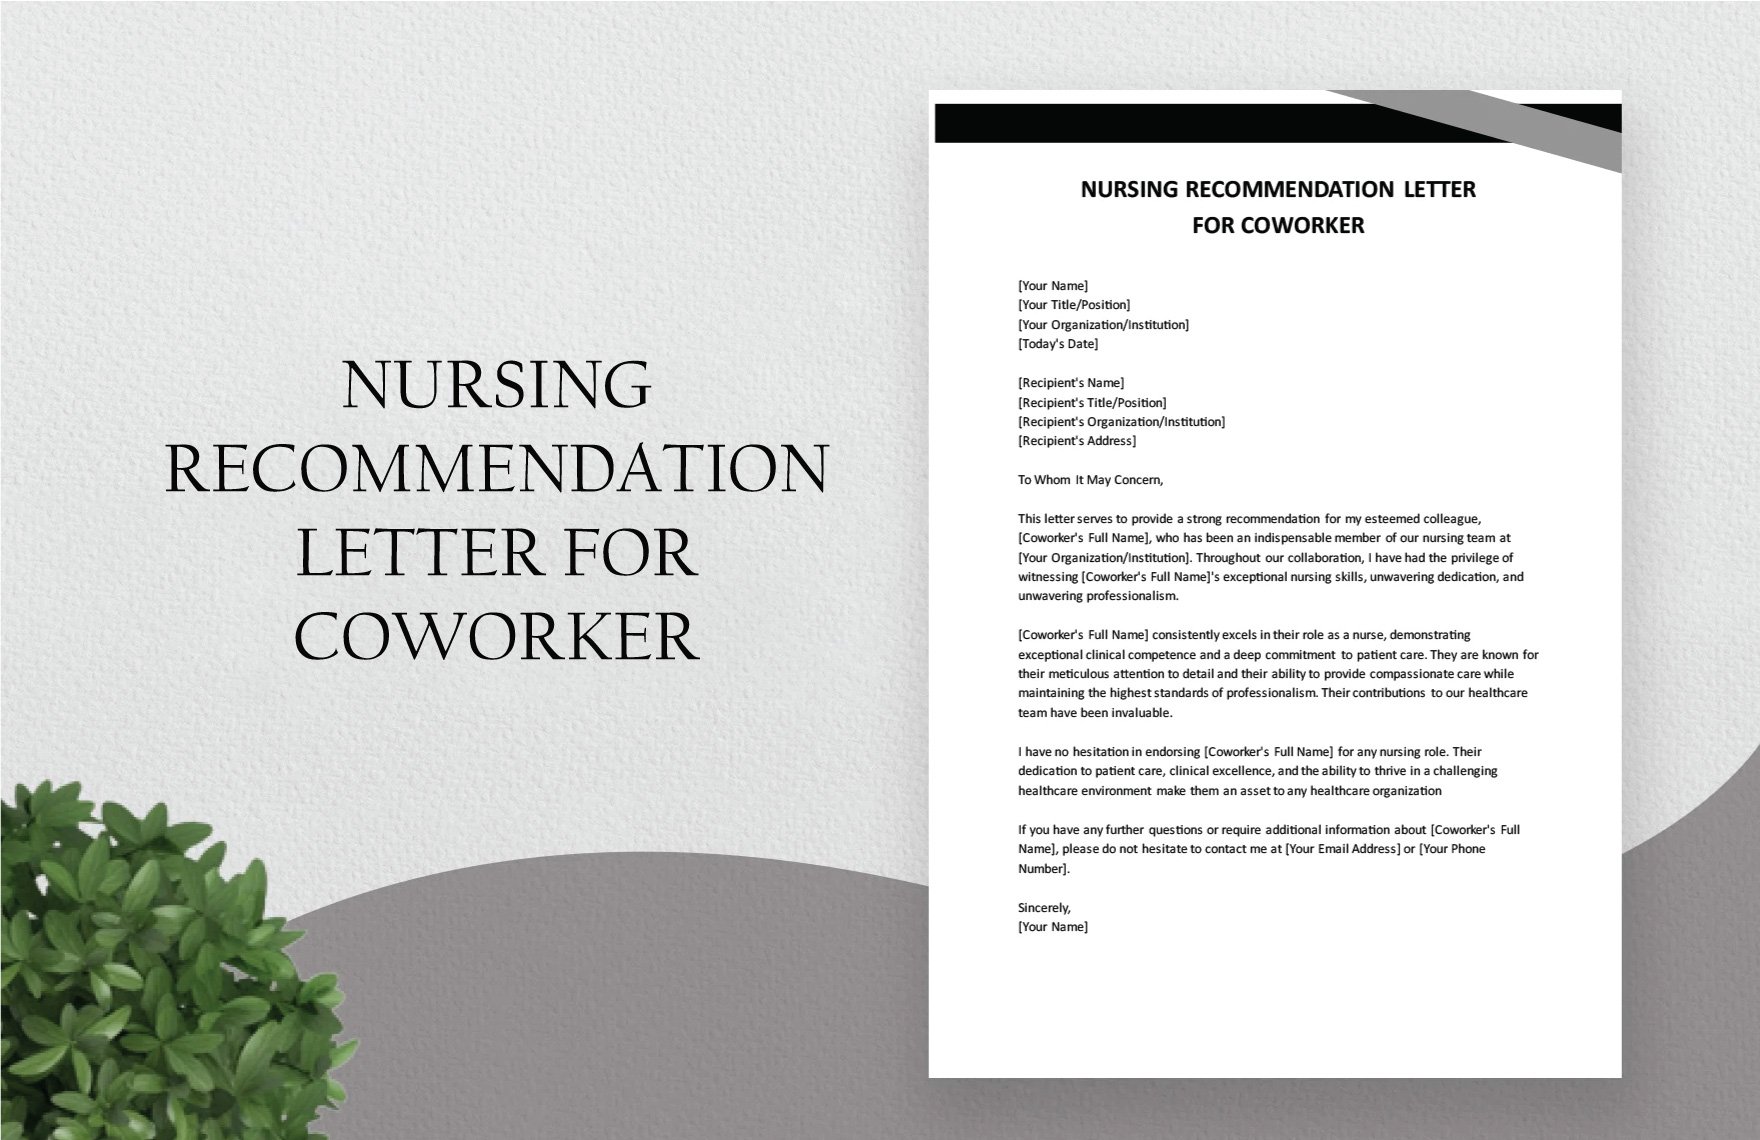 Nursing Recommendation Letter For Coworker